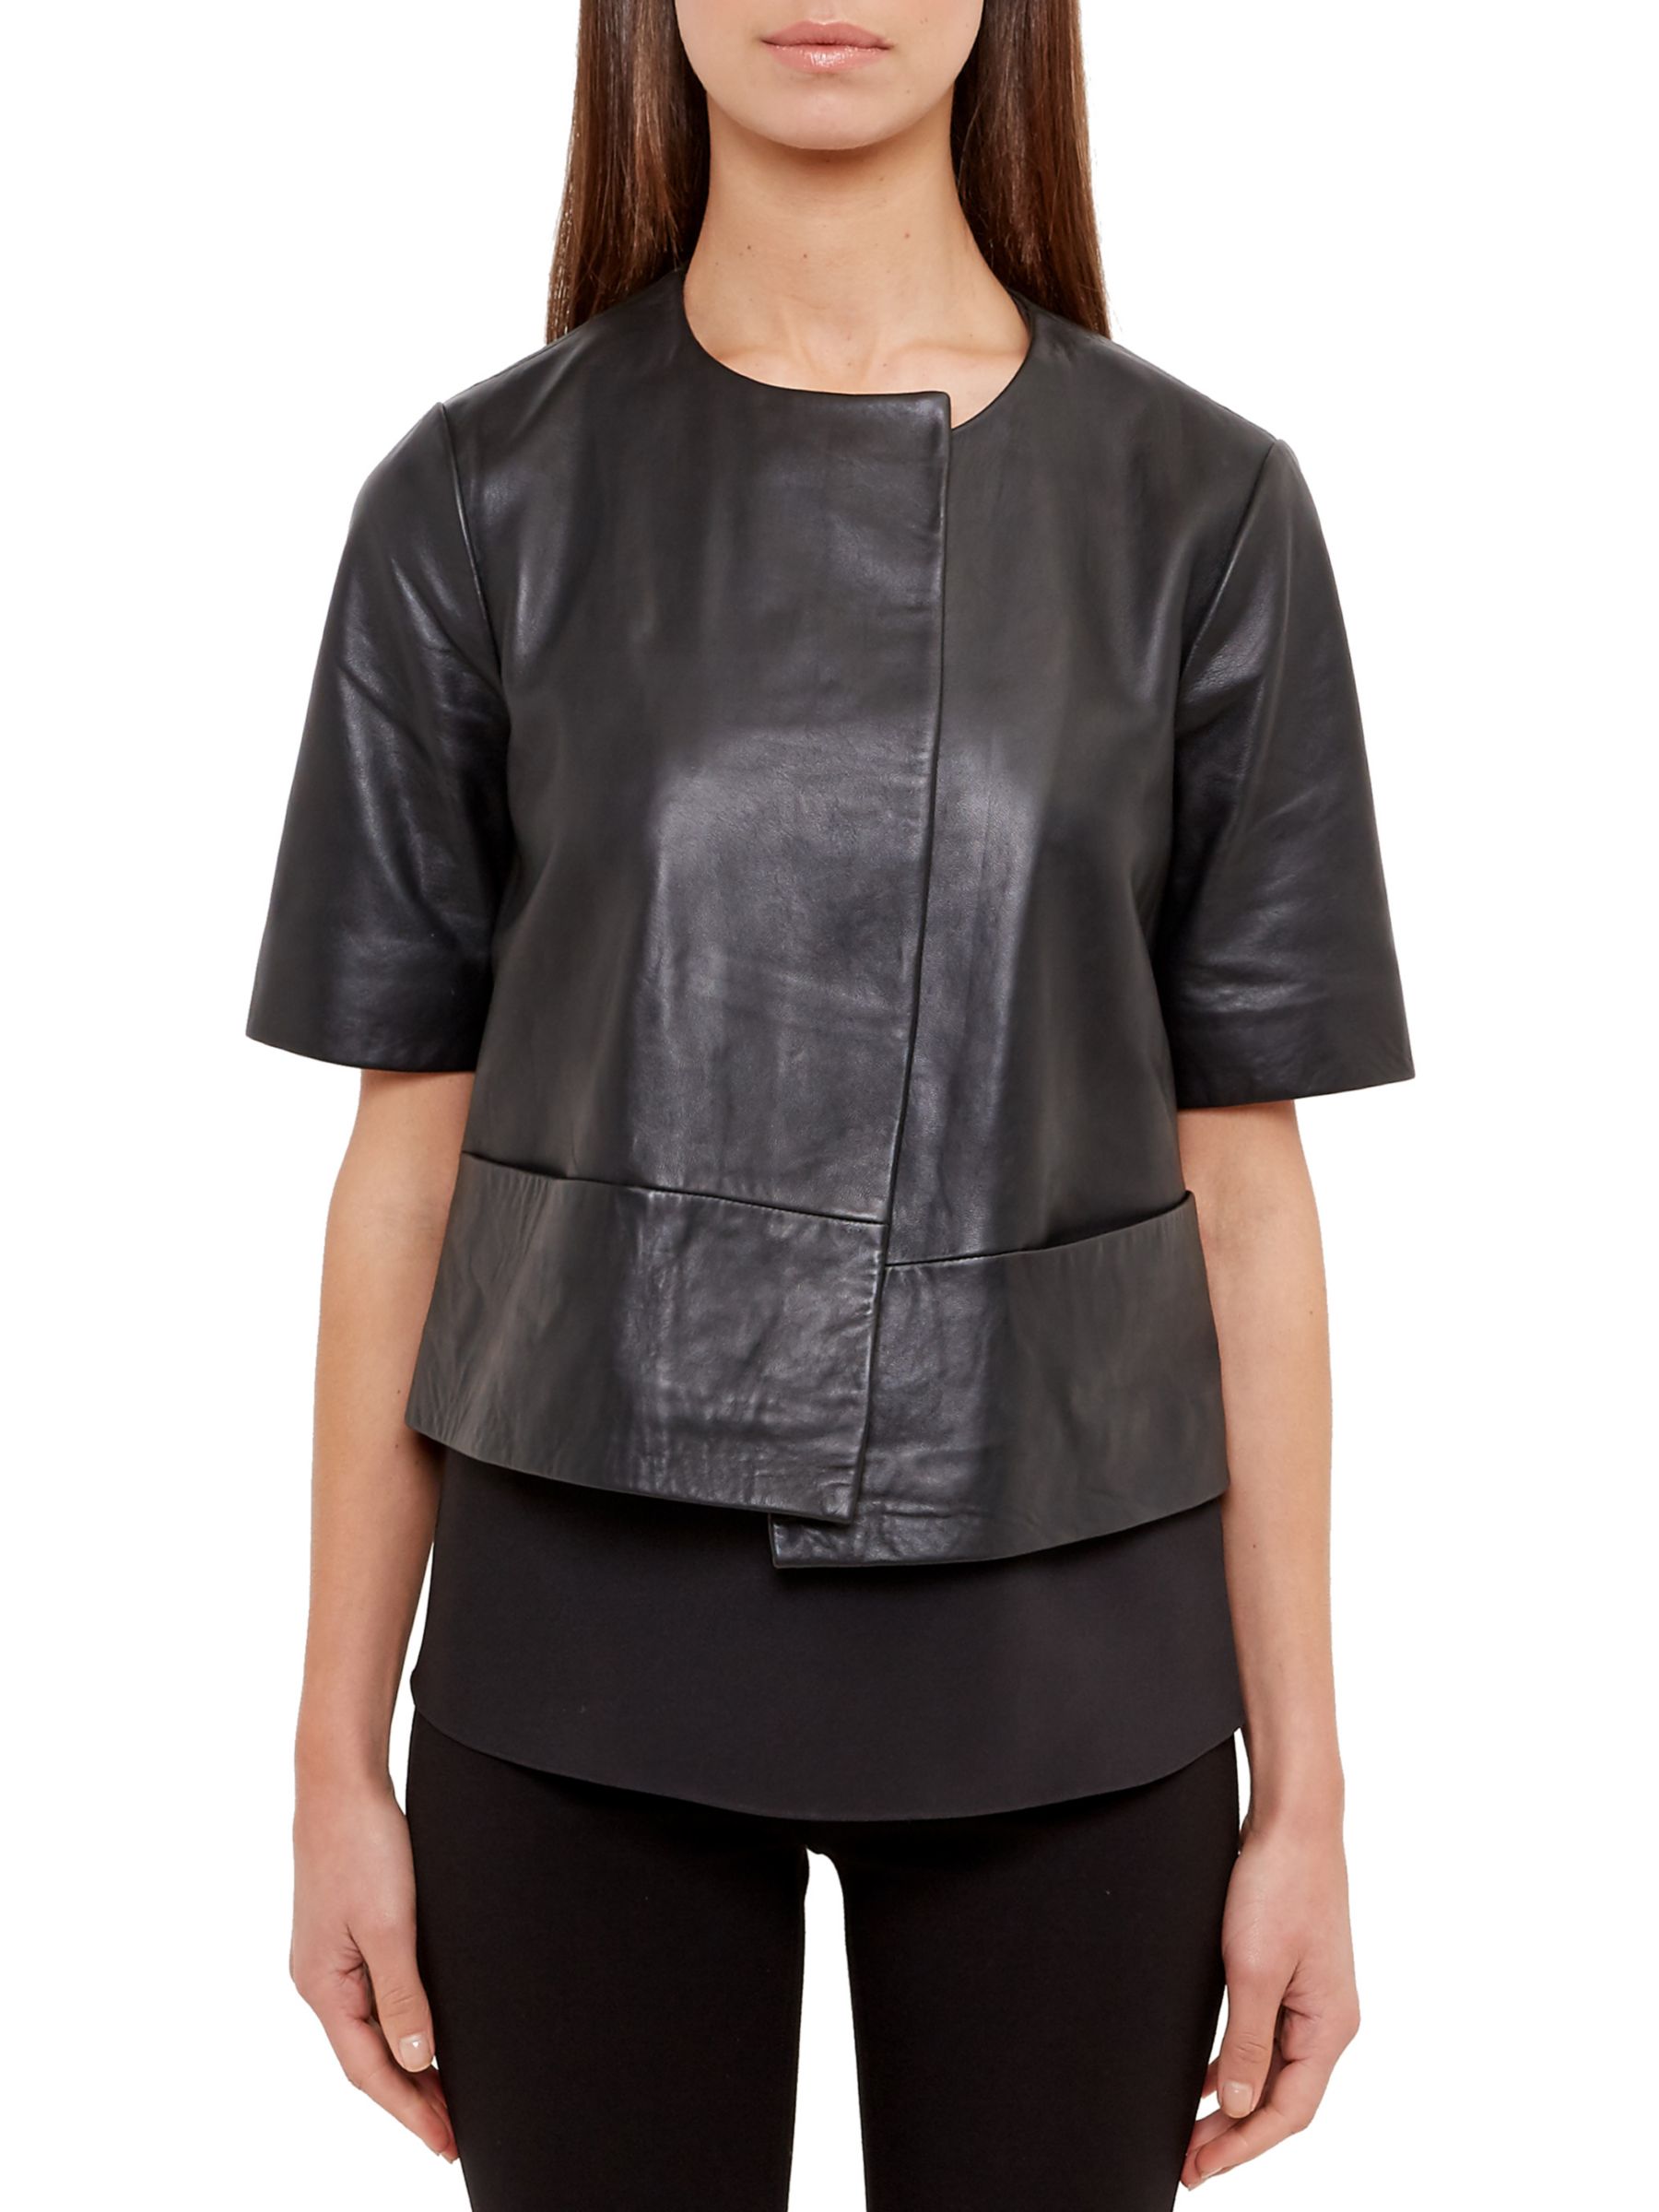 short sleeve leather jacket womens